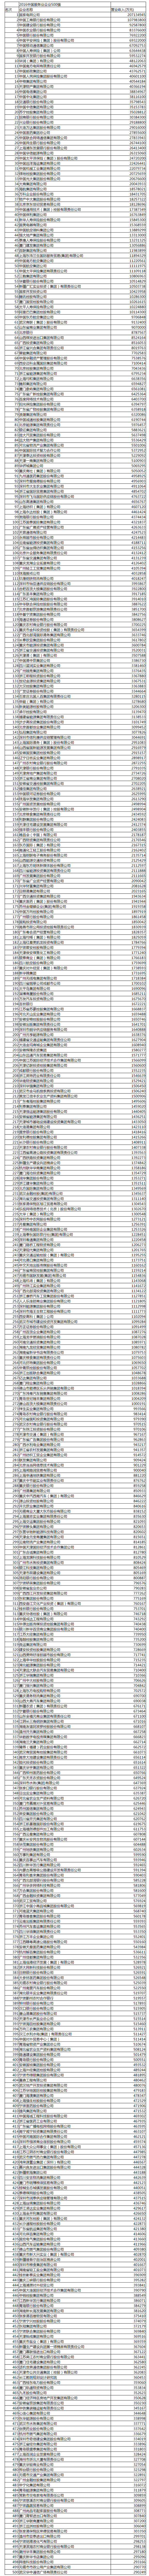 2016服务业500强榜单.jpg